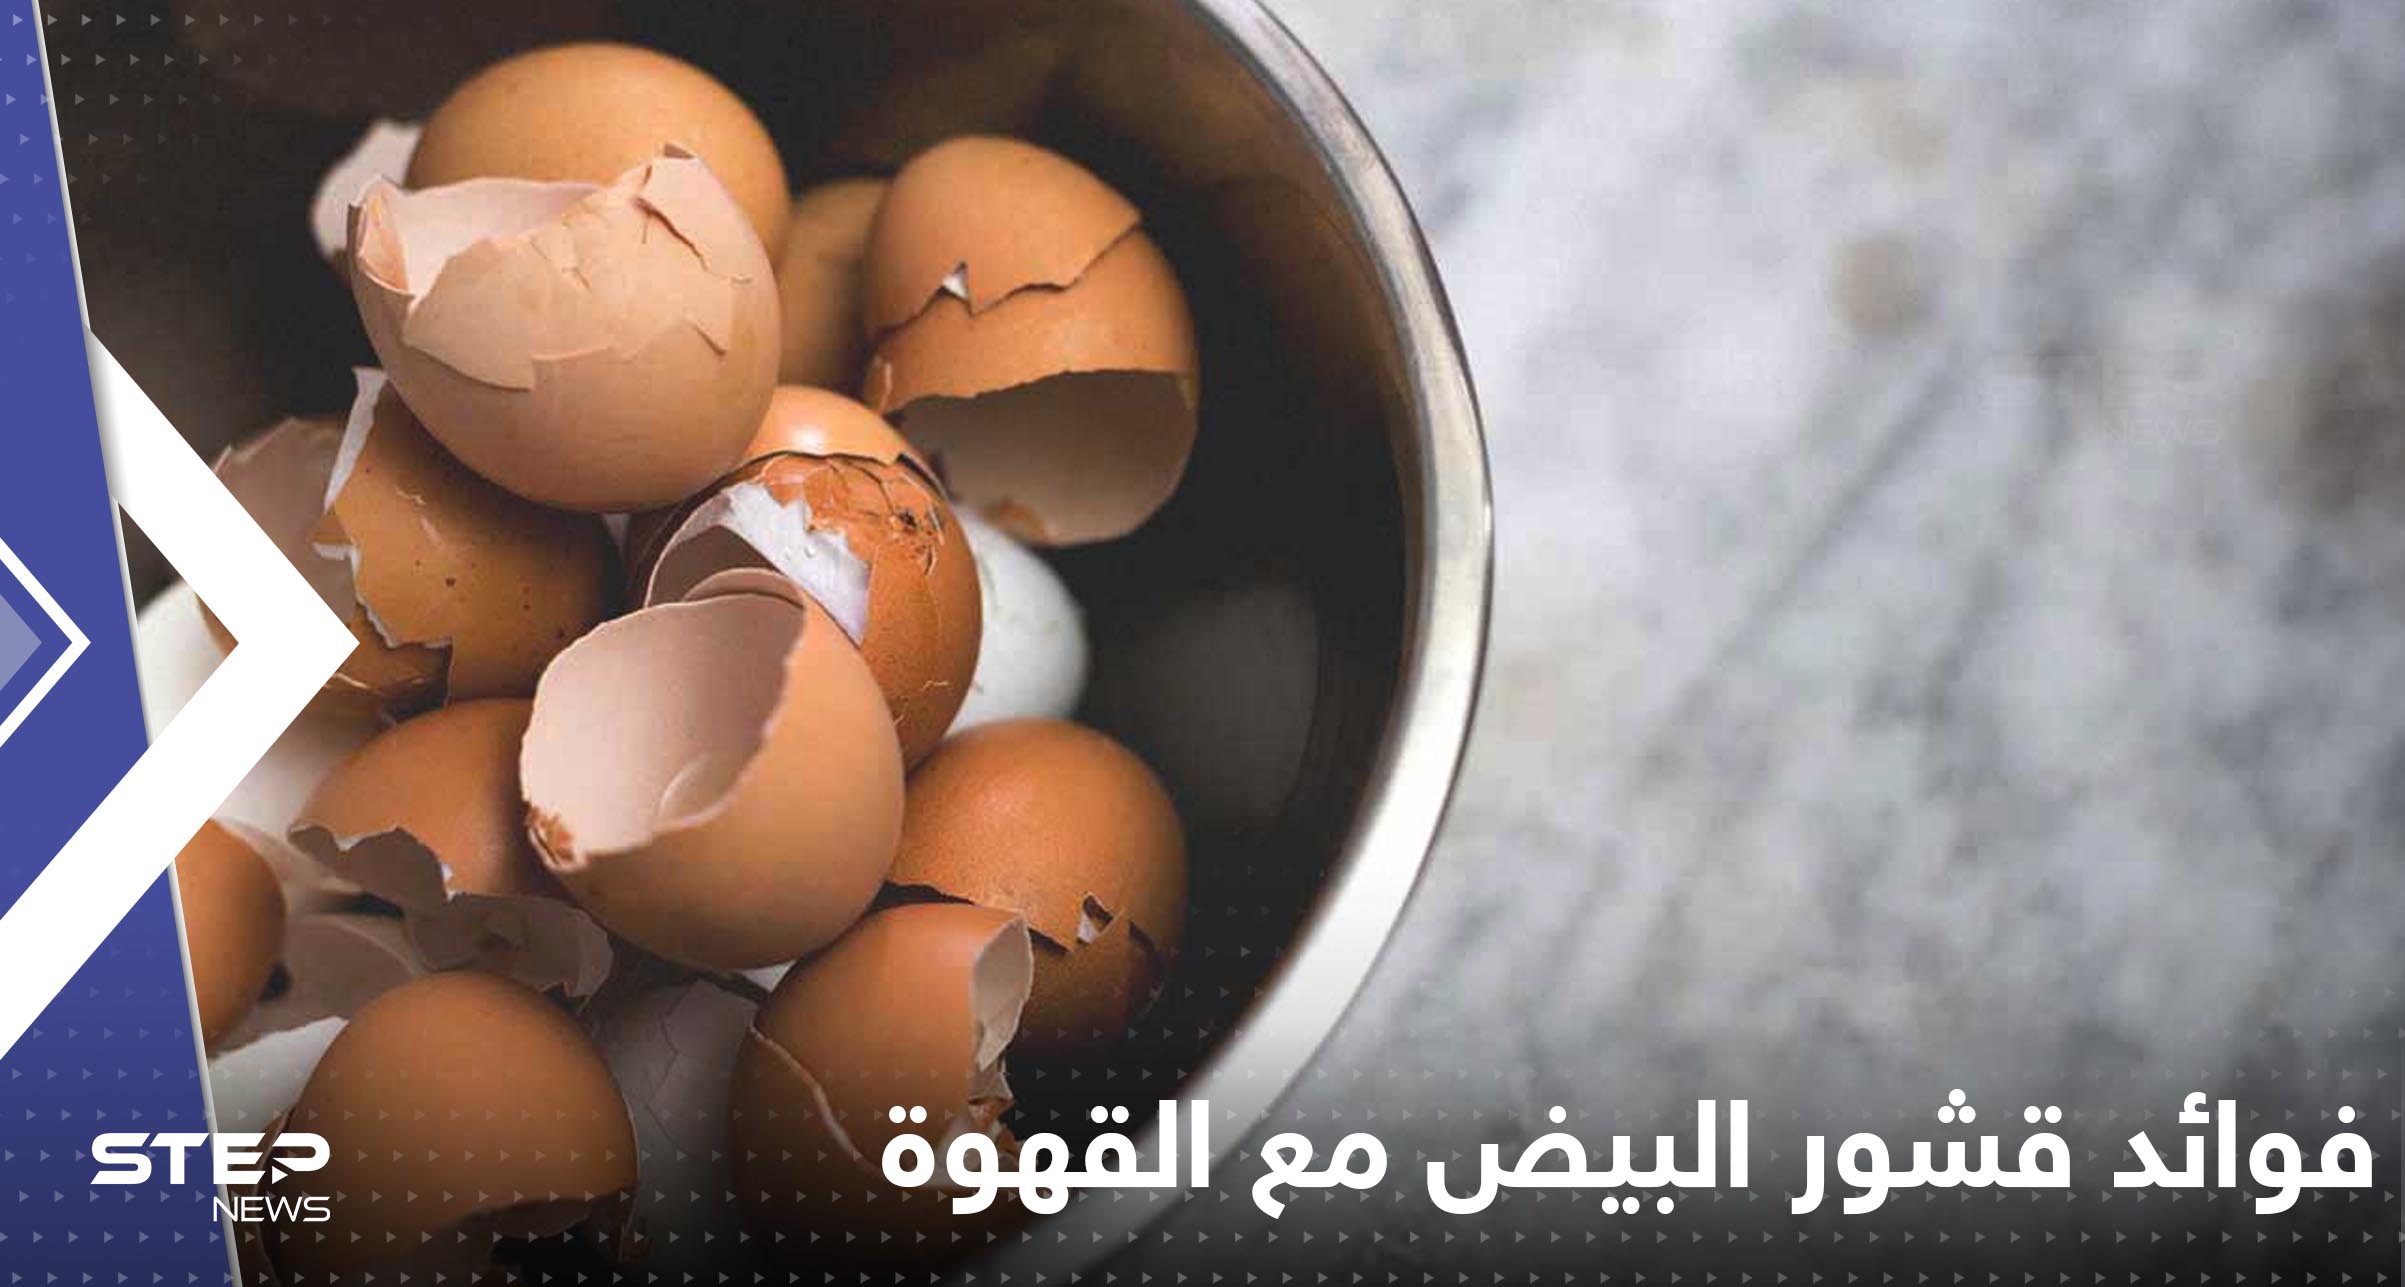 הנה מה שקורה כשמוסיפים קליפות ביצים לקפה!... יתרונות בלתי צפויים